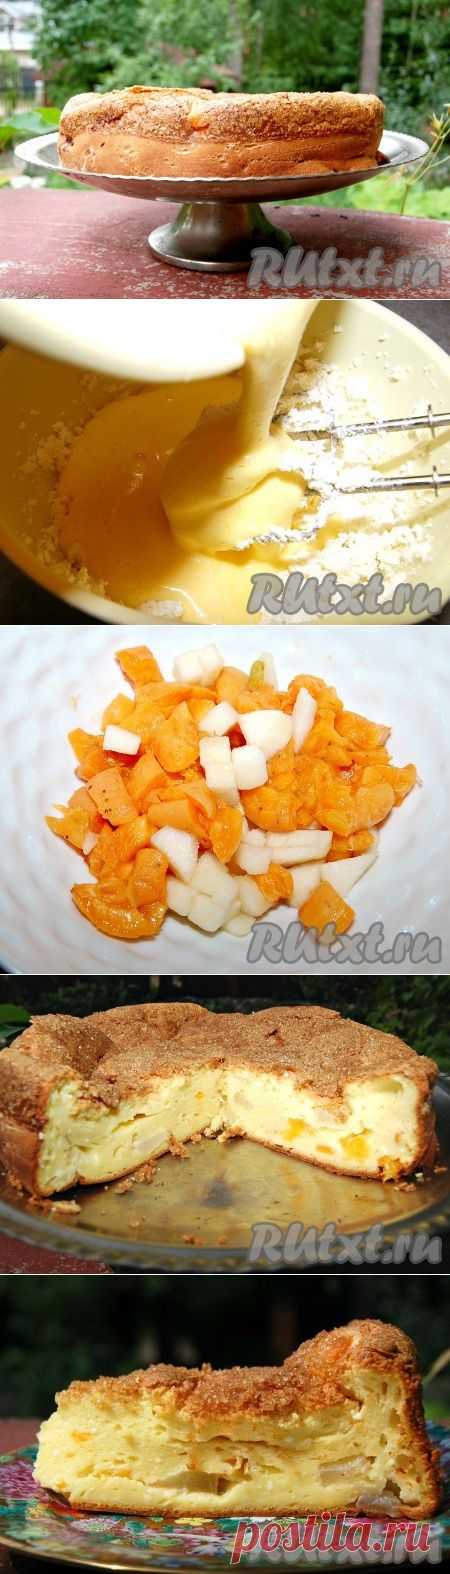 Творожный пирог с абрикосами (рецепт с фото) | RUtxt.ru